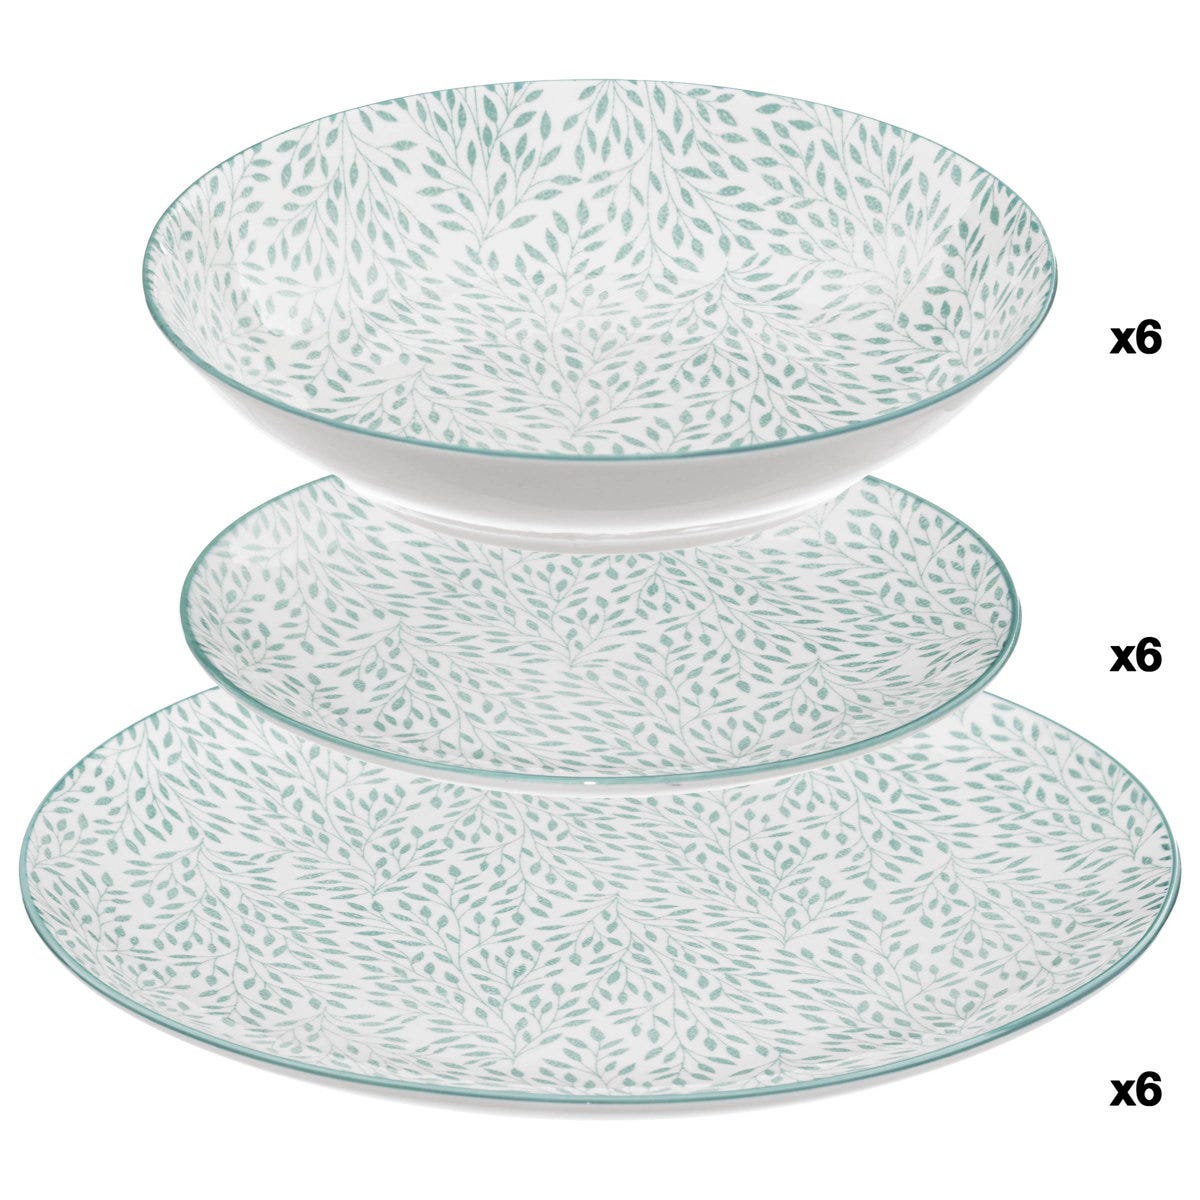 Porcelaine, céramique ou mélamine : comment choisir les bonnes assiettes ?